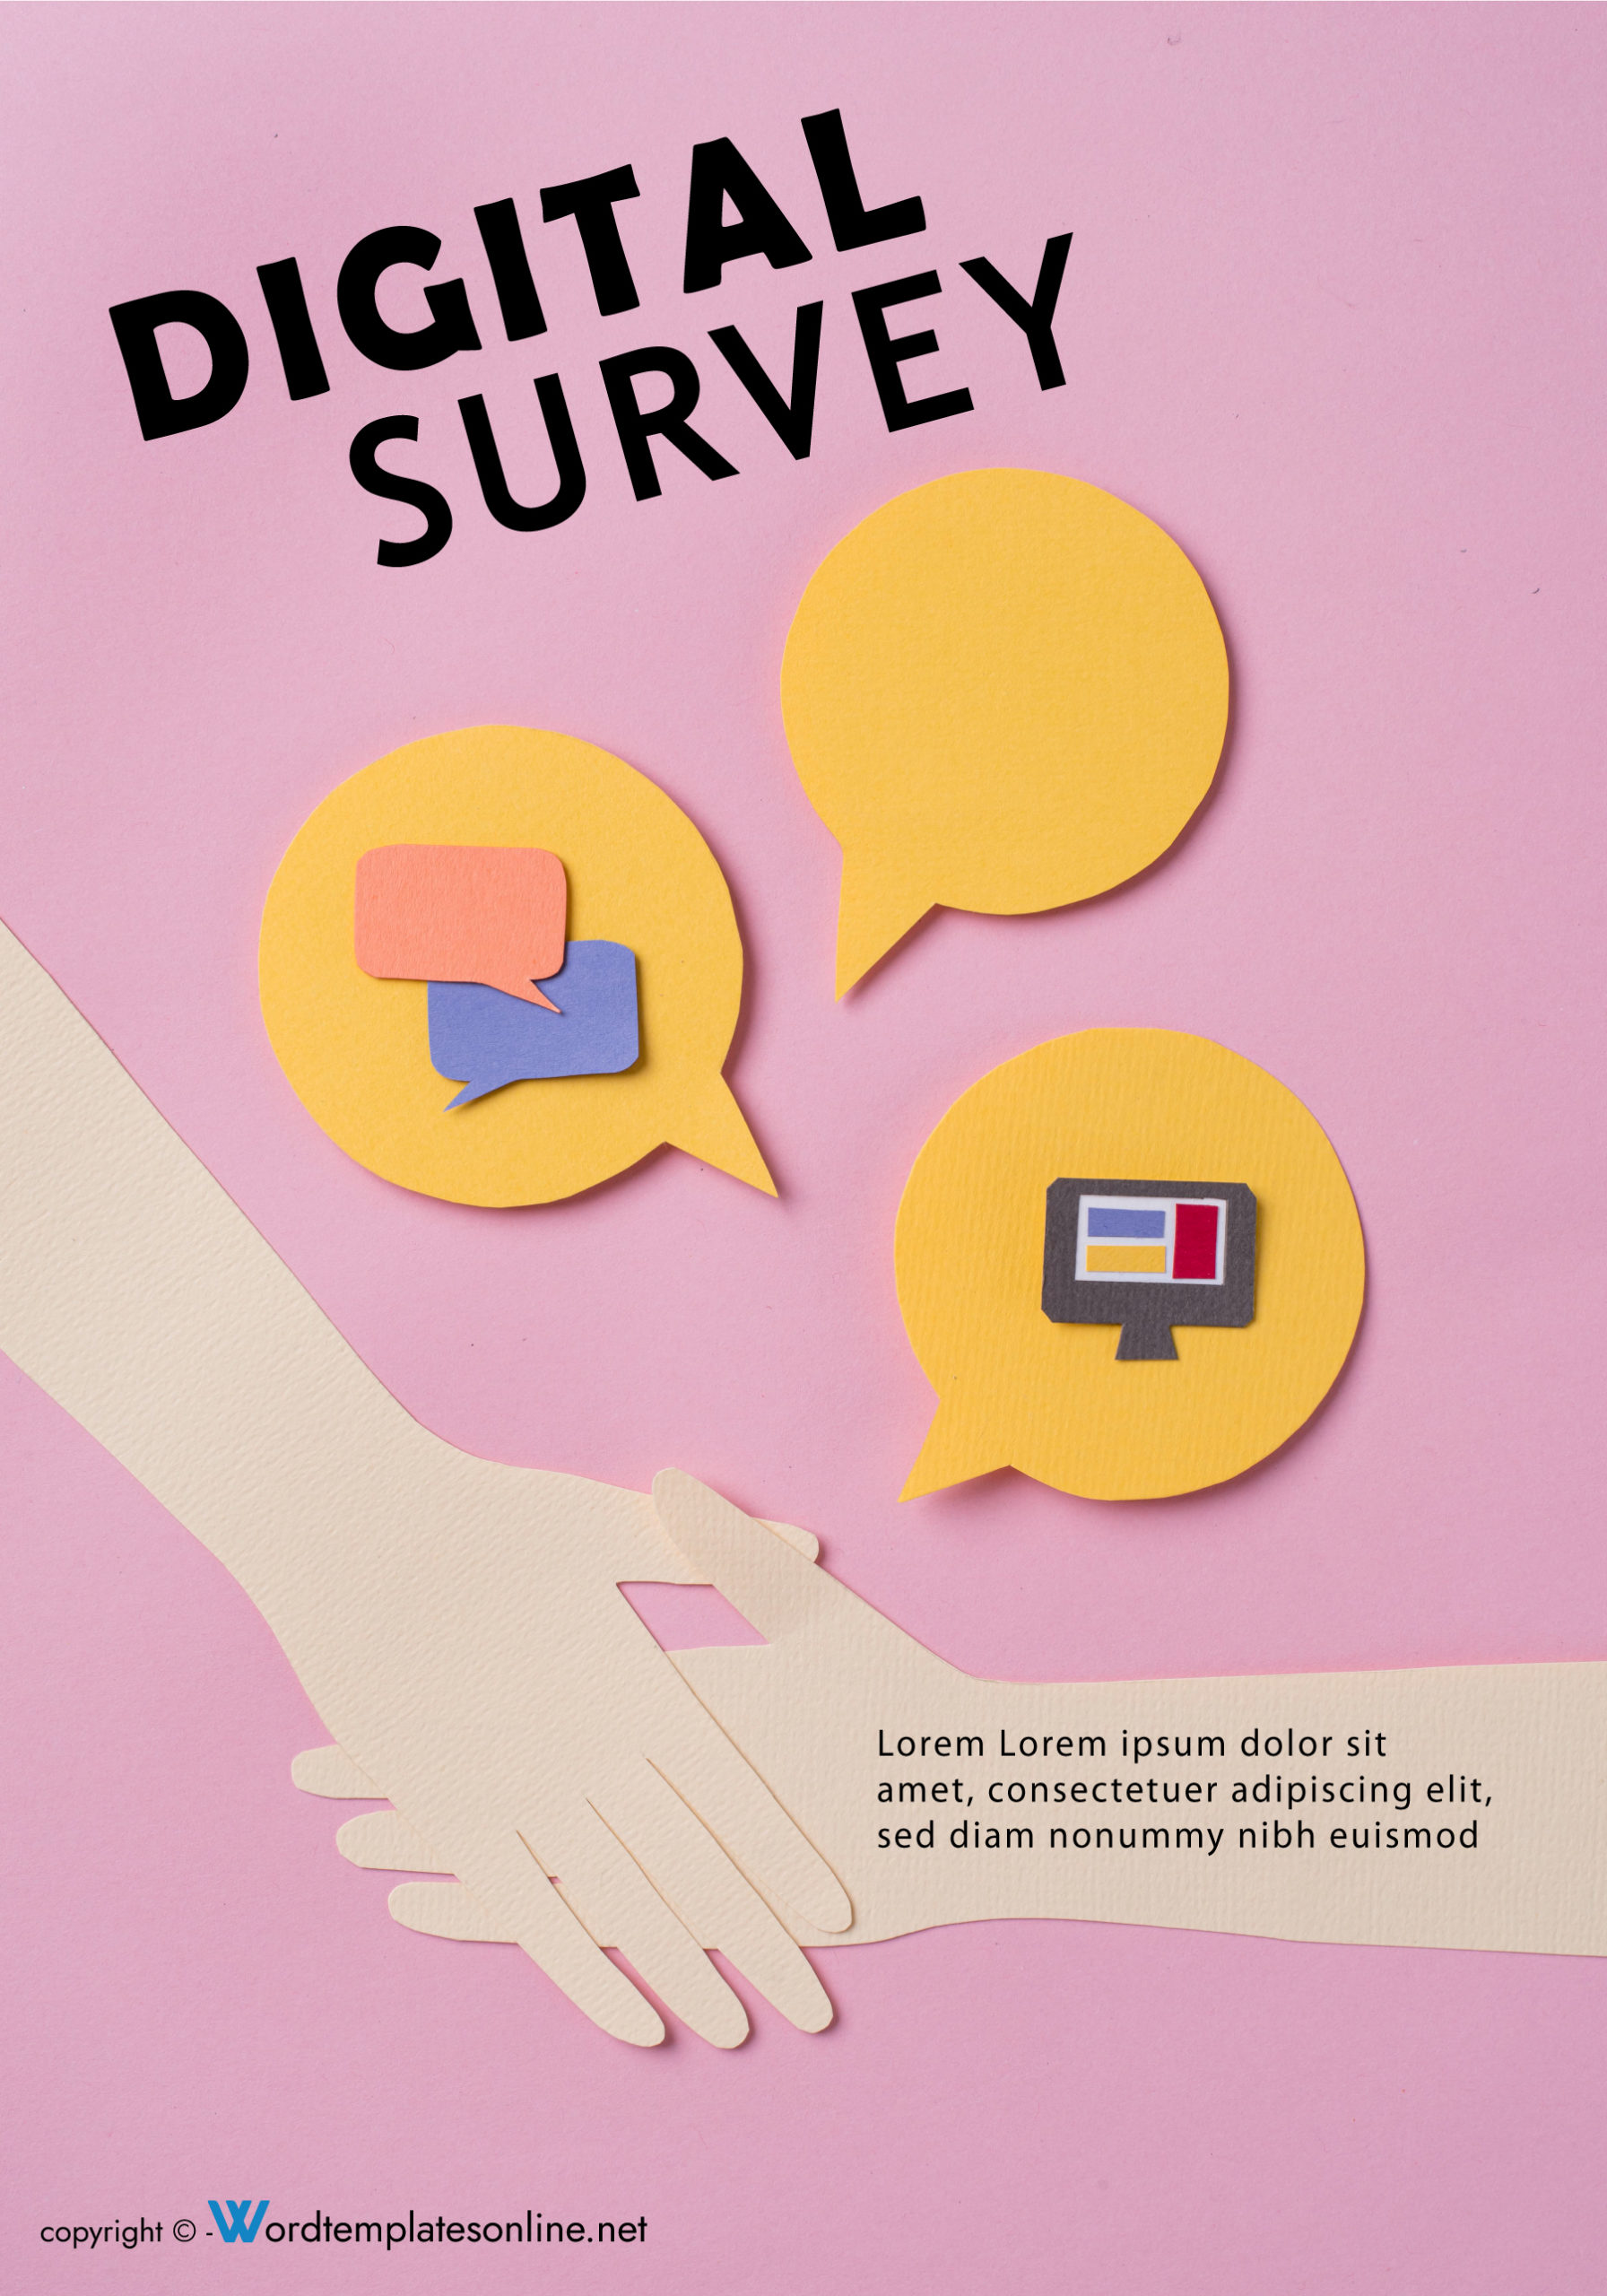 digital survey cover design